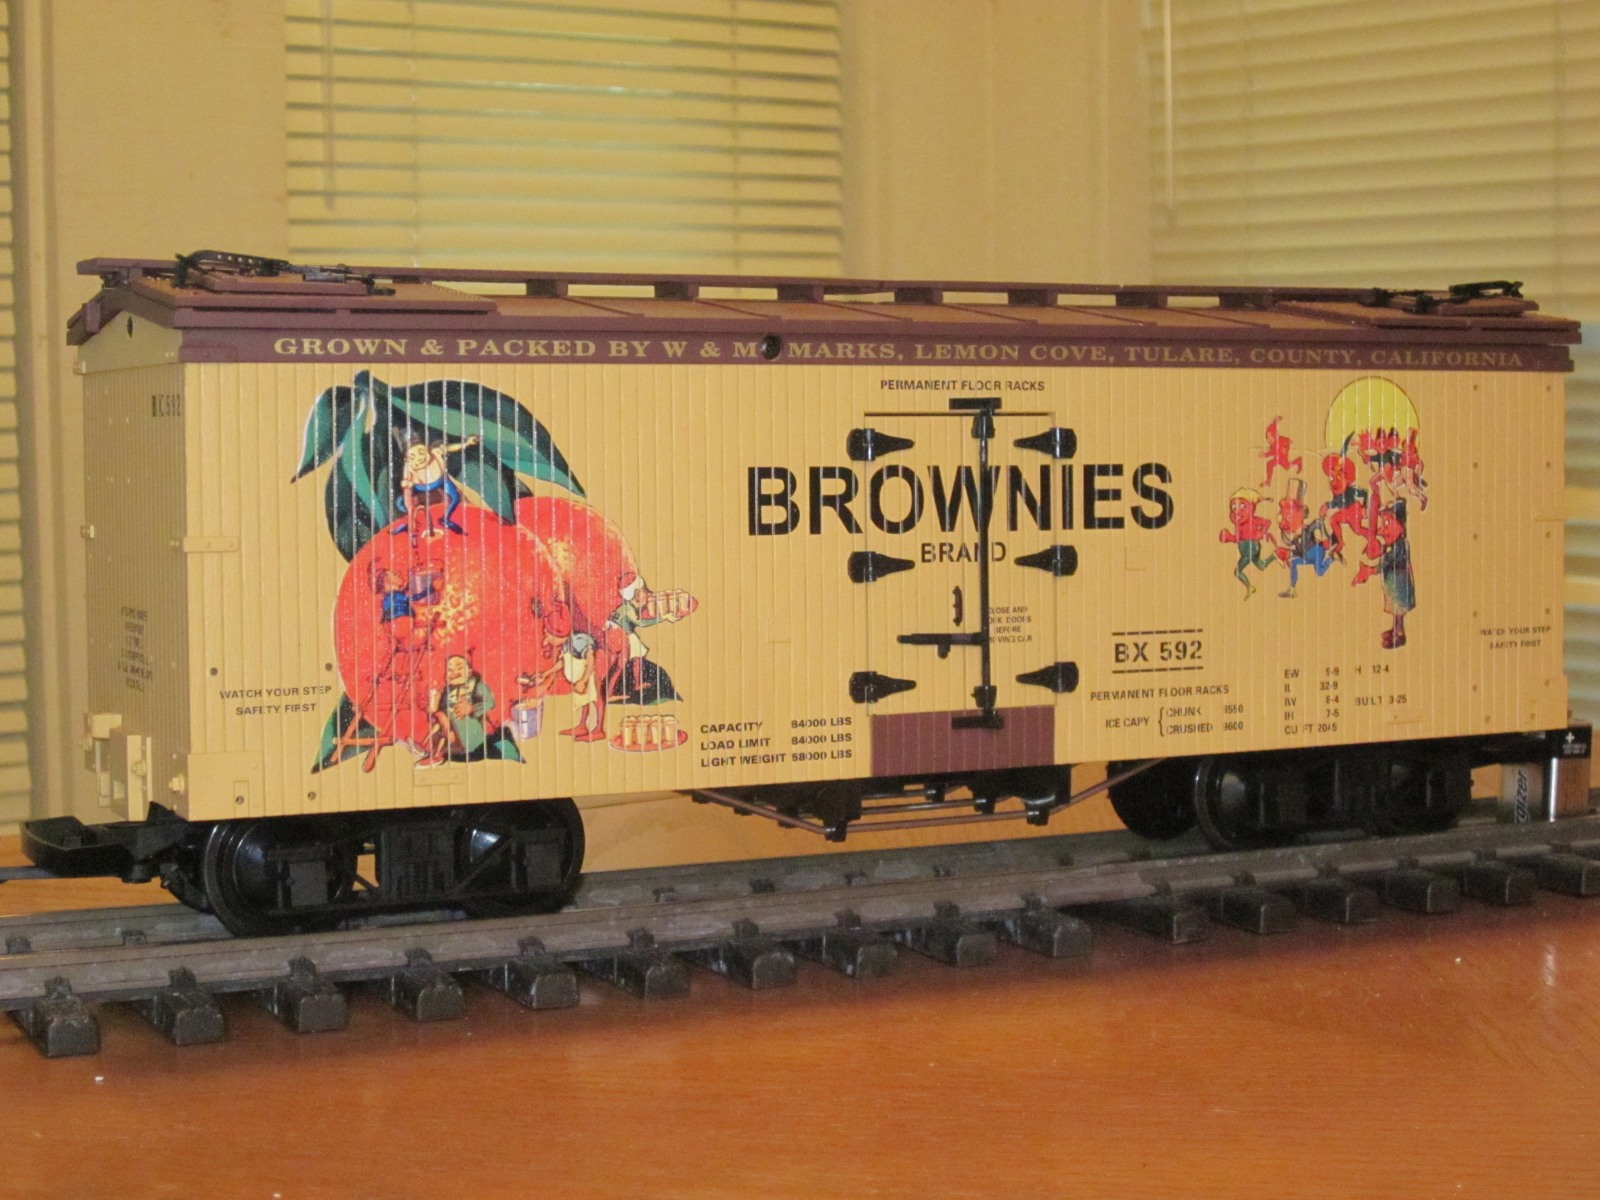 R16387 Brownies Brand BX 592